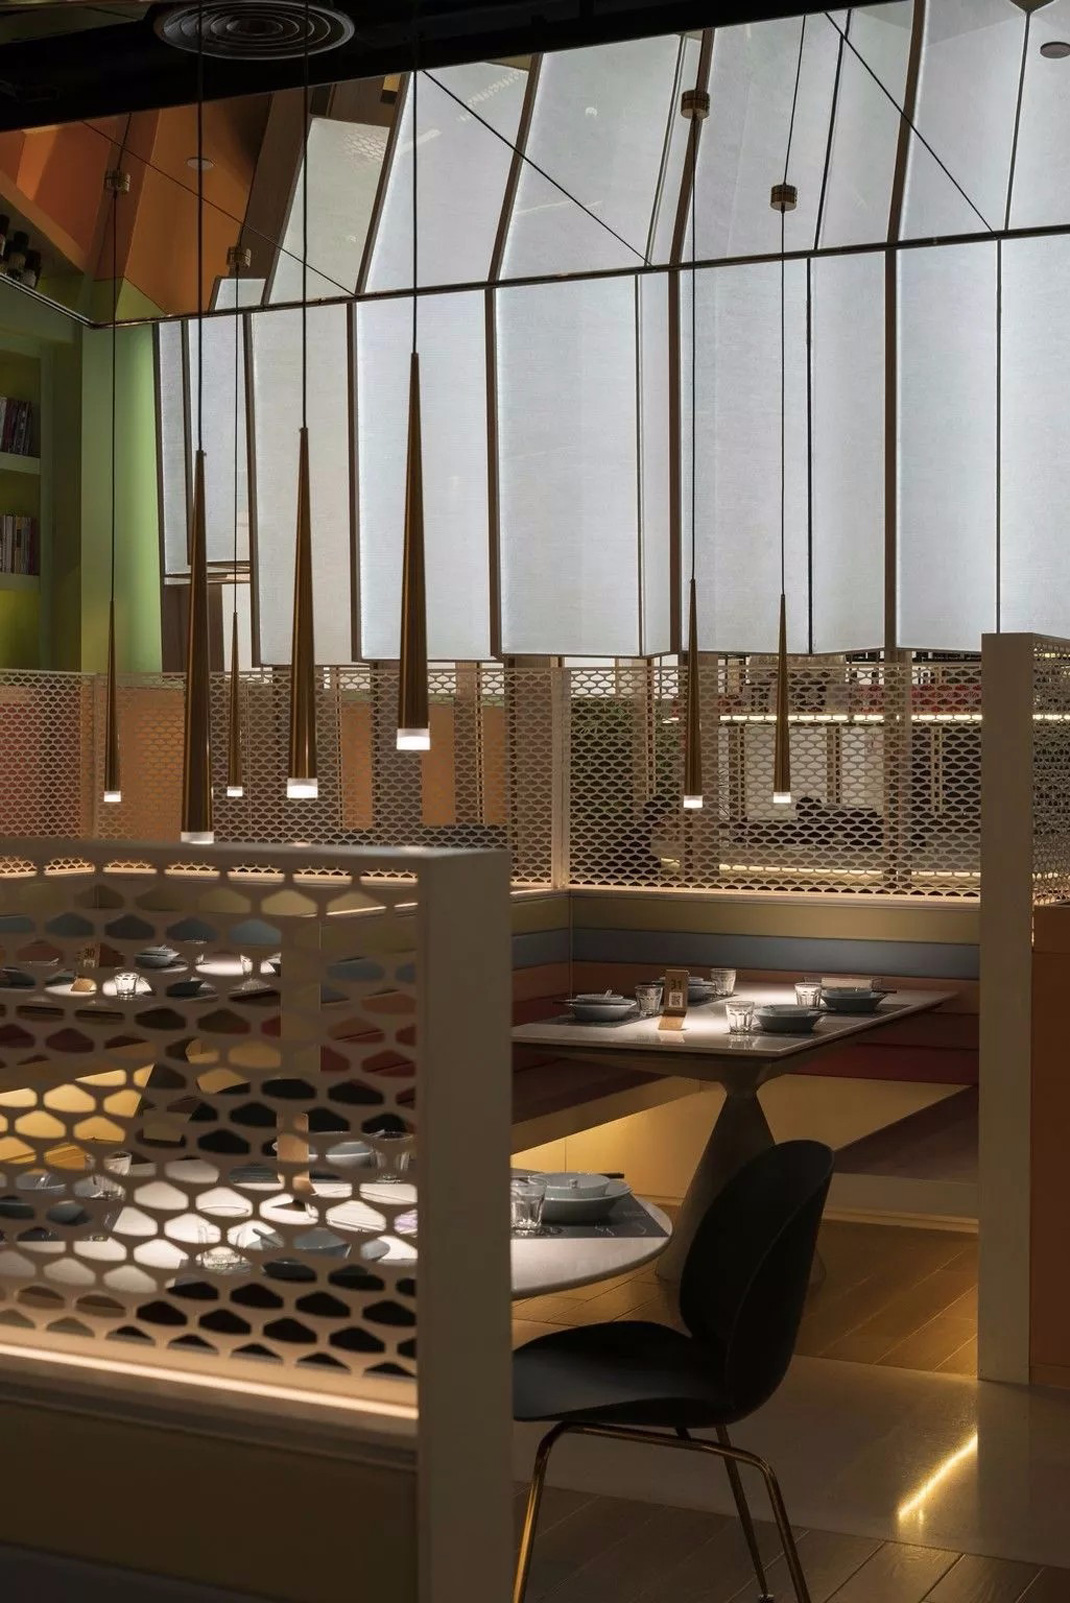 亲橙里外婆家与炉鱼 杭州 主题餐厅 餐饮空间 烤鱼 装置 logo设计 VI设计 空间设计 视觉餐饮